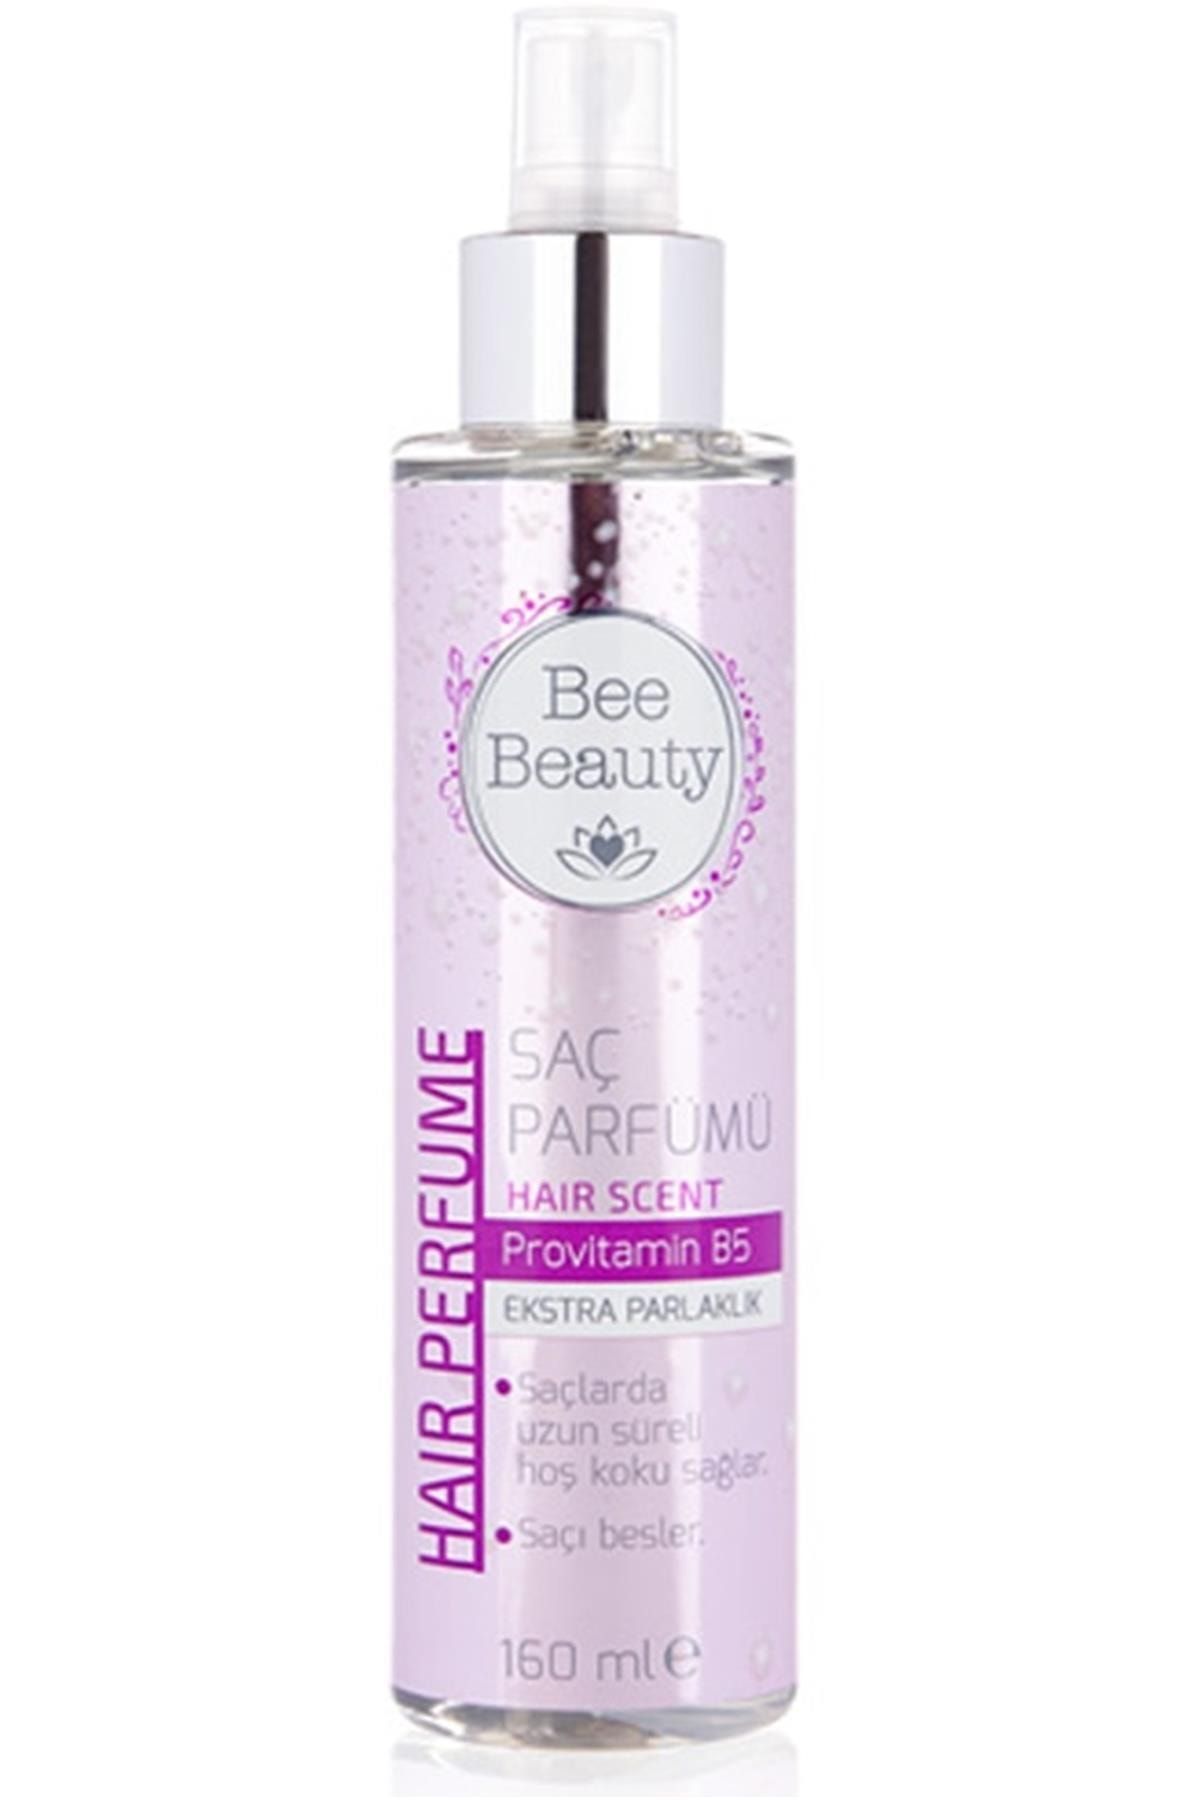 Bee Beauty Saç Parfümü 160 Ml Kategori: Saç Köpüğü